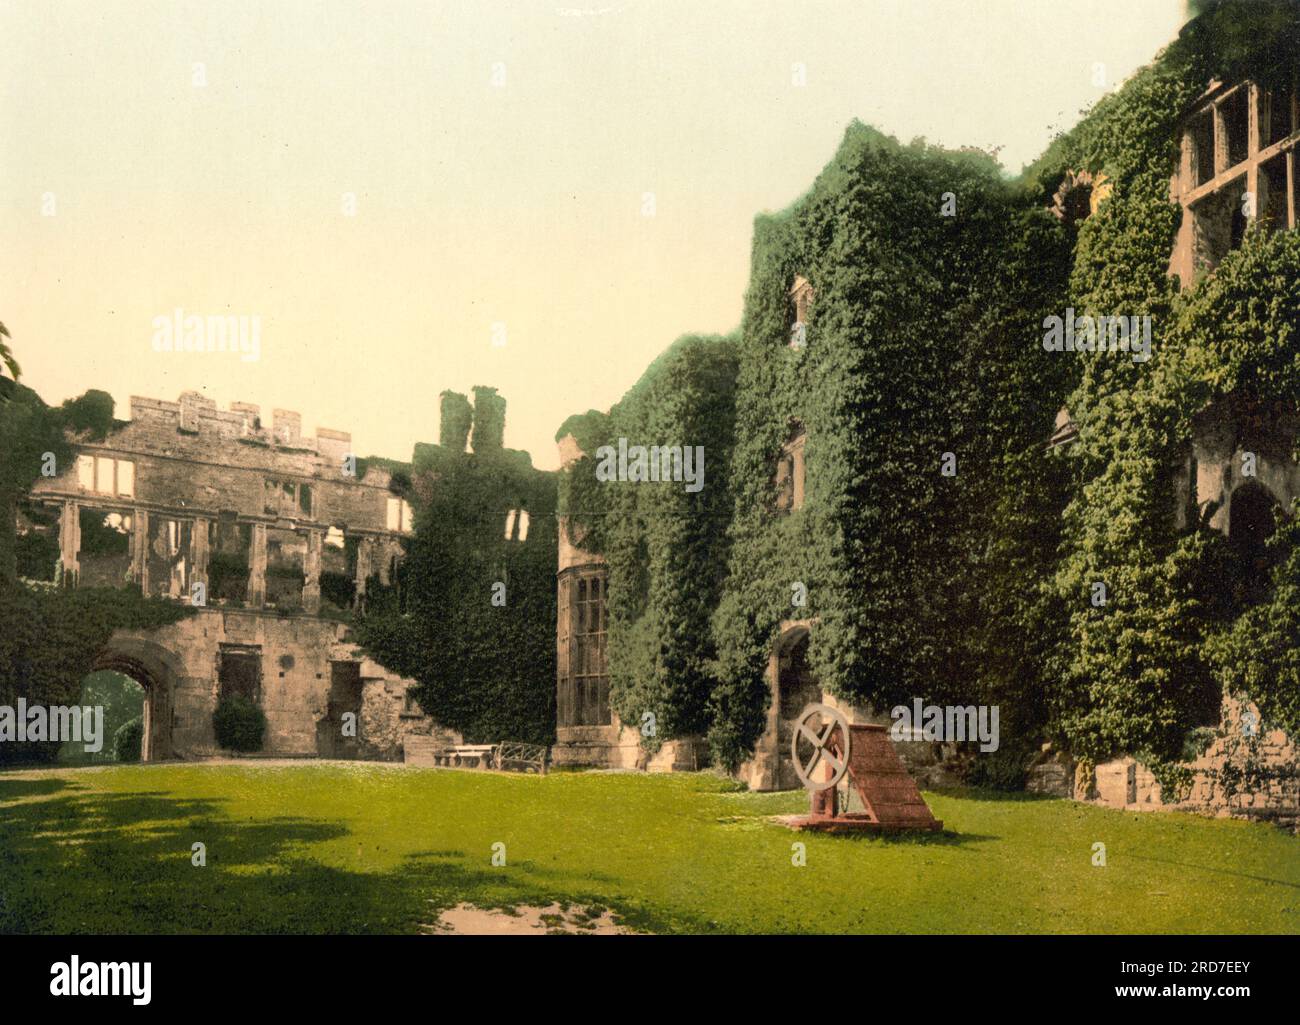 La cour, Château de Raglan, Castell Rhaglan, un château médiéval tardif situé juste au nord du village de Raglan dans le comté de Monmouthshire dans le sud-est du pays de Galles, Grande-Bretagne, 1895, reproduction historique, numérique améliorée d'une ancienne gravure photochrome Banque D'Images